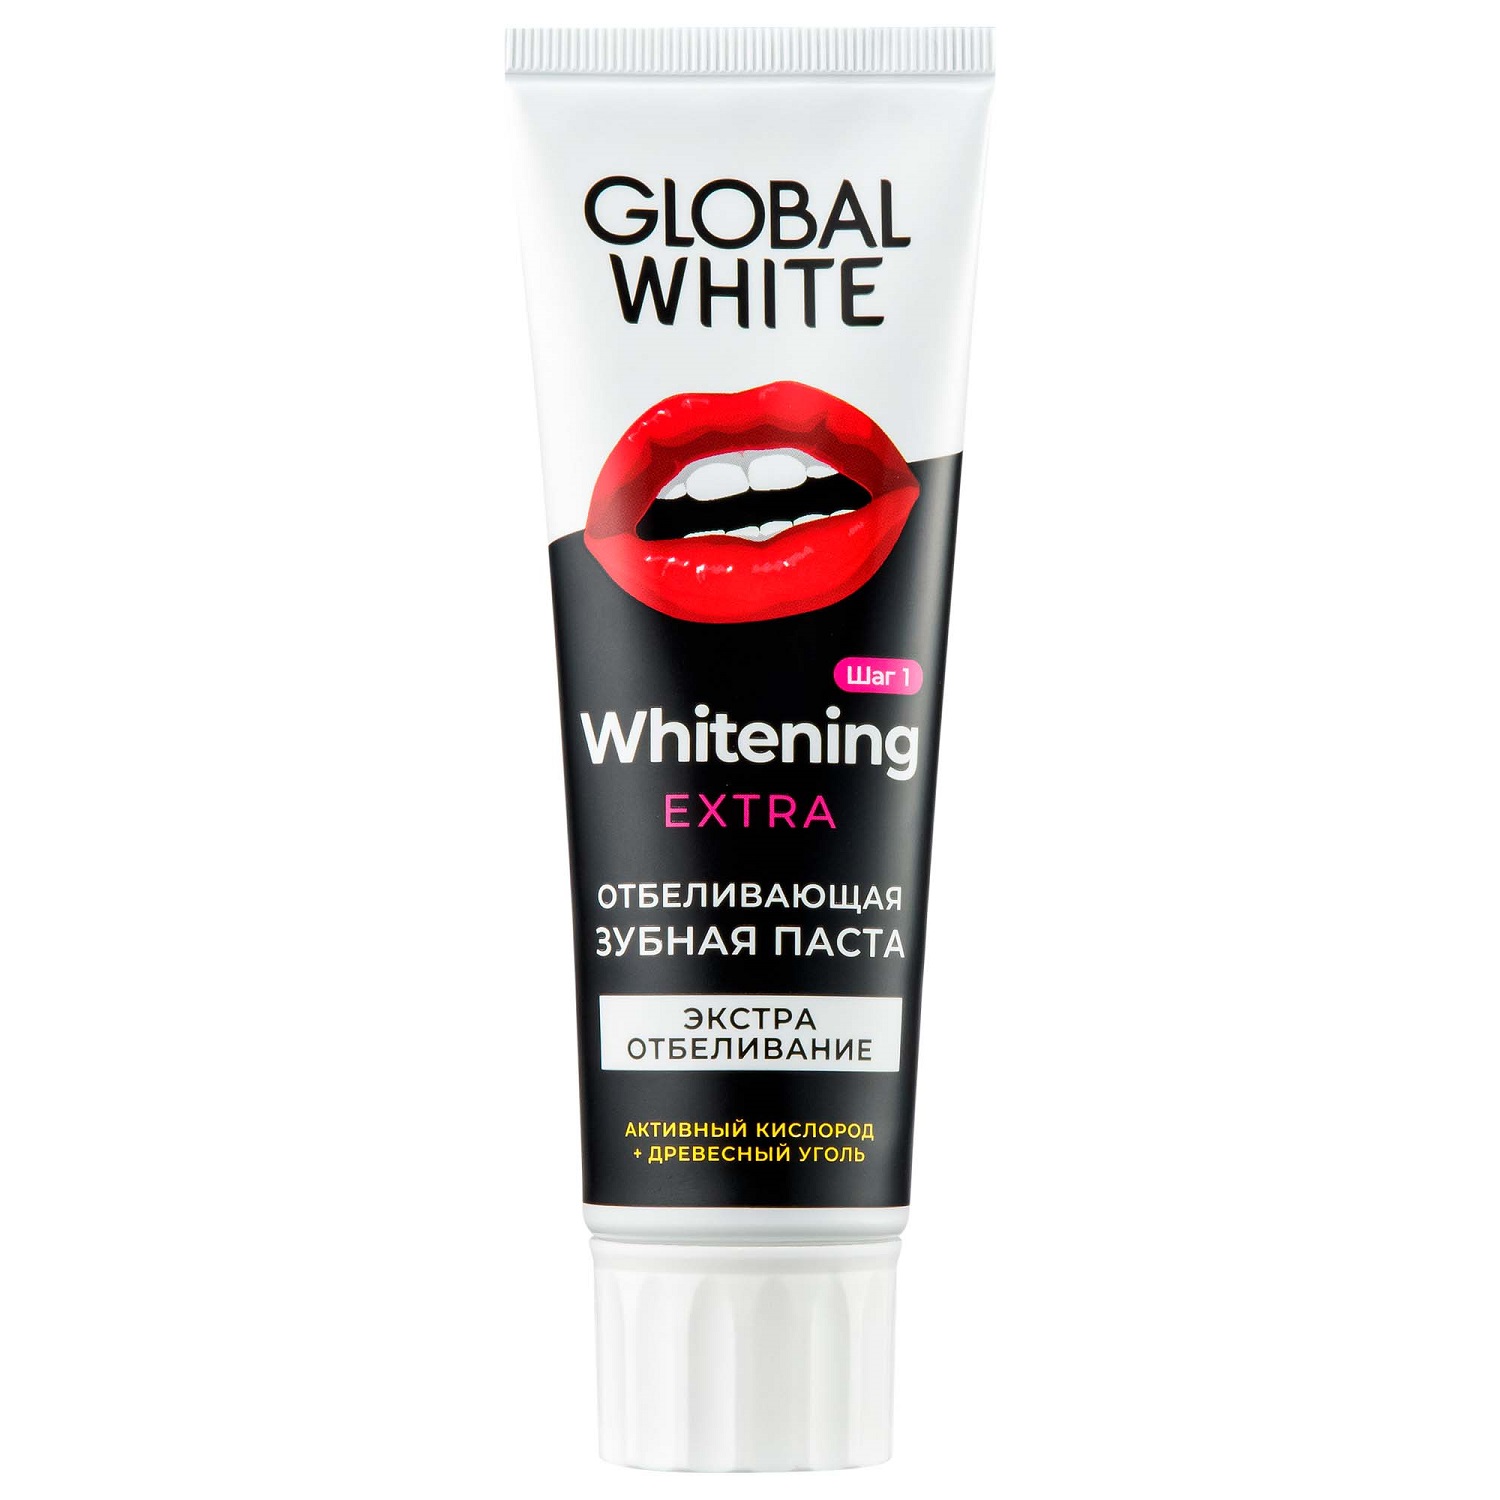 Global White Отбеливающая зубная паста Extra Whitening, 100 г (Global White, Подготовка к отбеливанию) наумов сергей подготовка к охоте